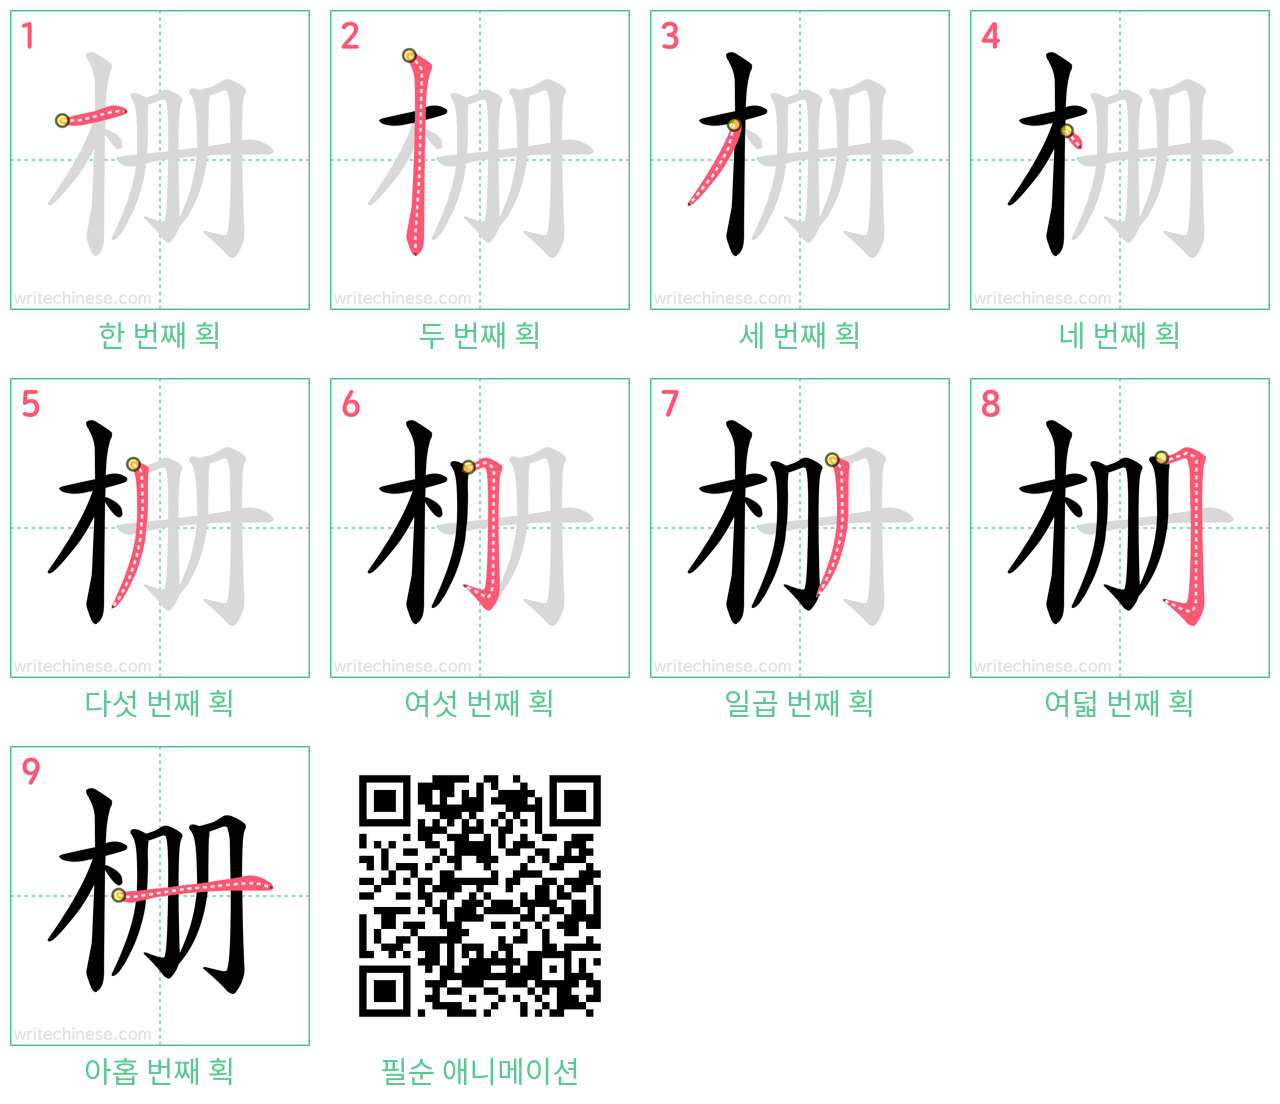 栅 step-by-step stroke order diagrams